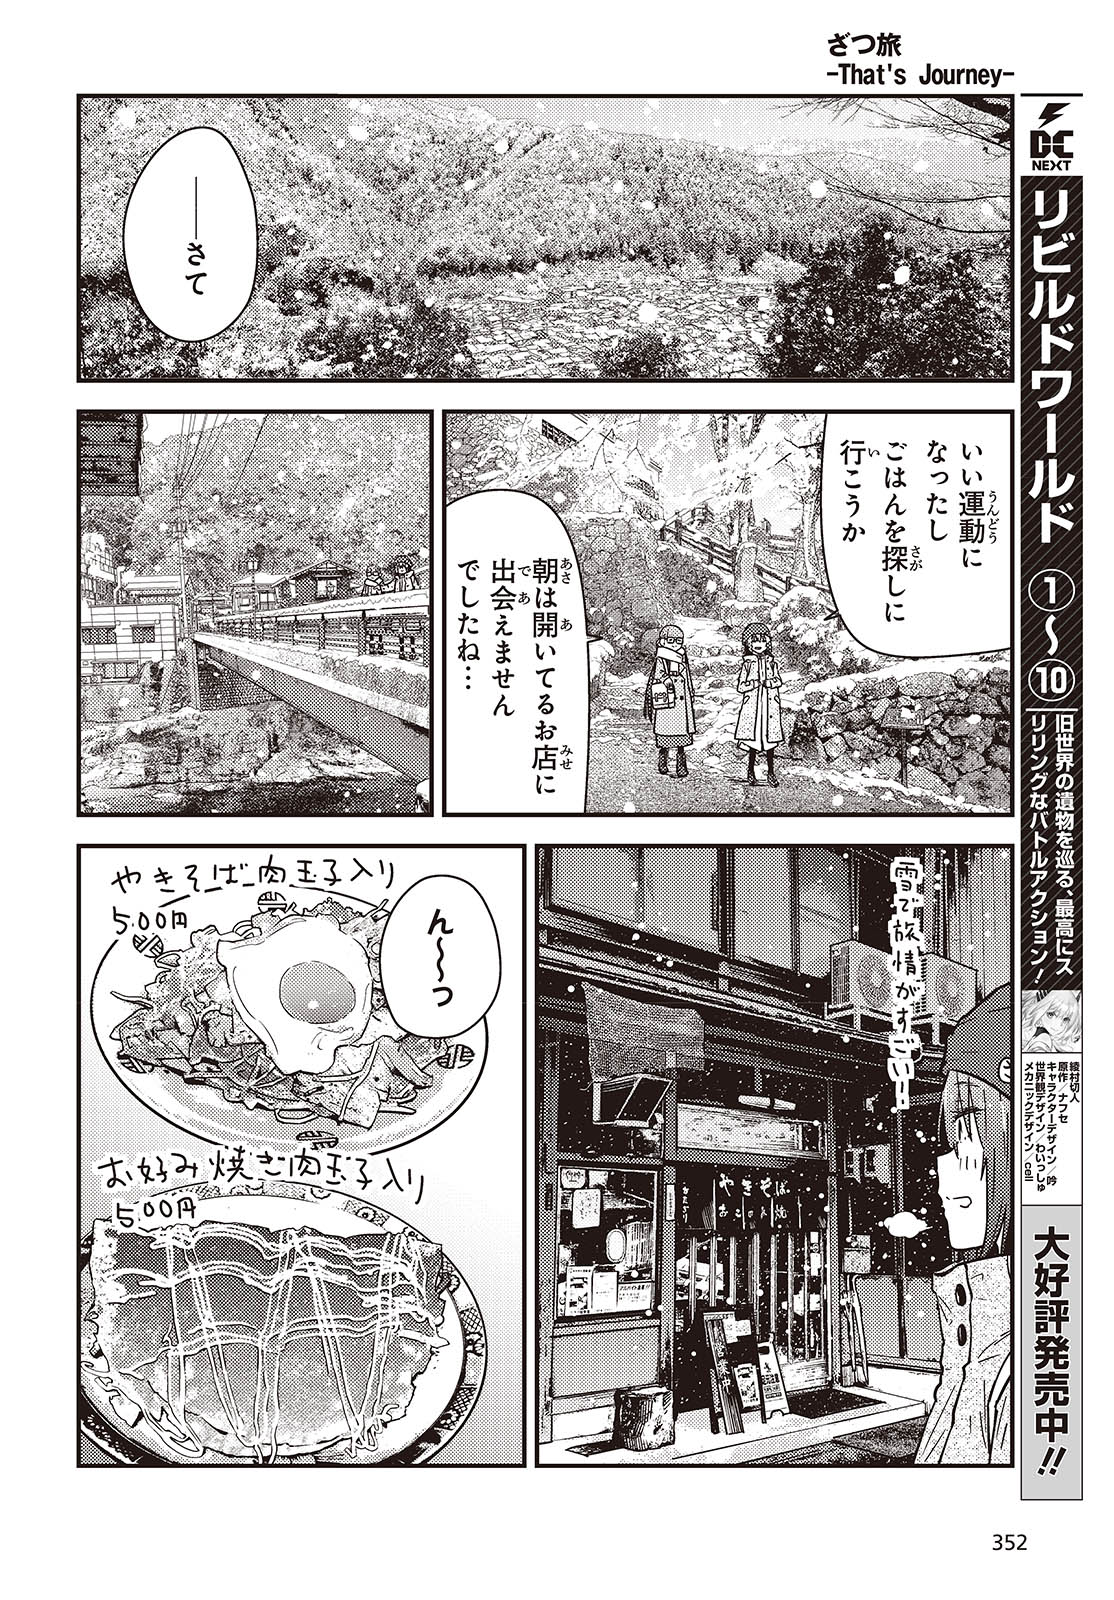 ざつ旅-That's Journey- 第36.2話 - Page 12